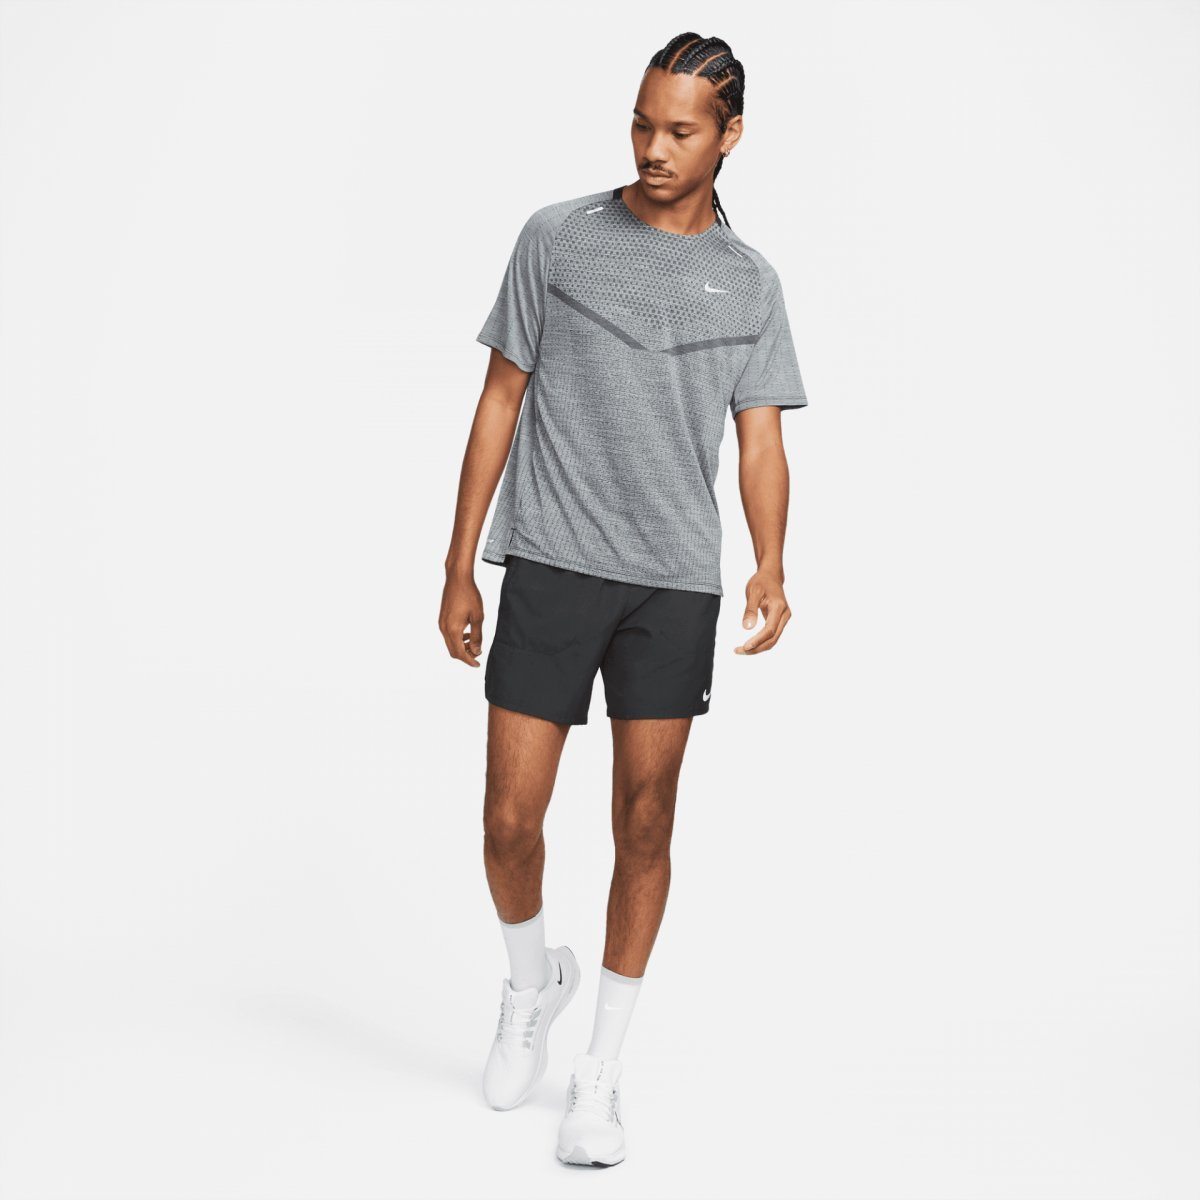 Nike Man's T-shirt Dri-Fit Adv